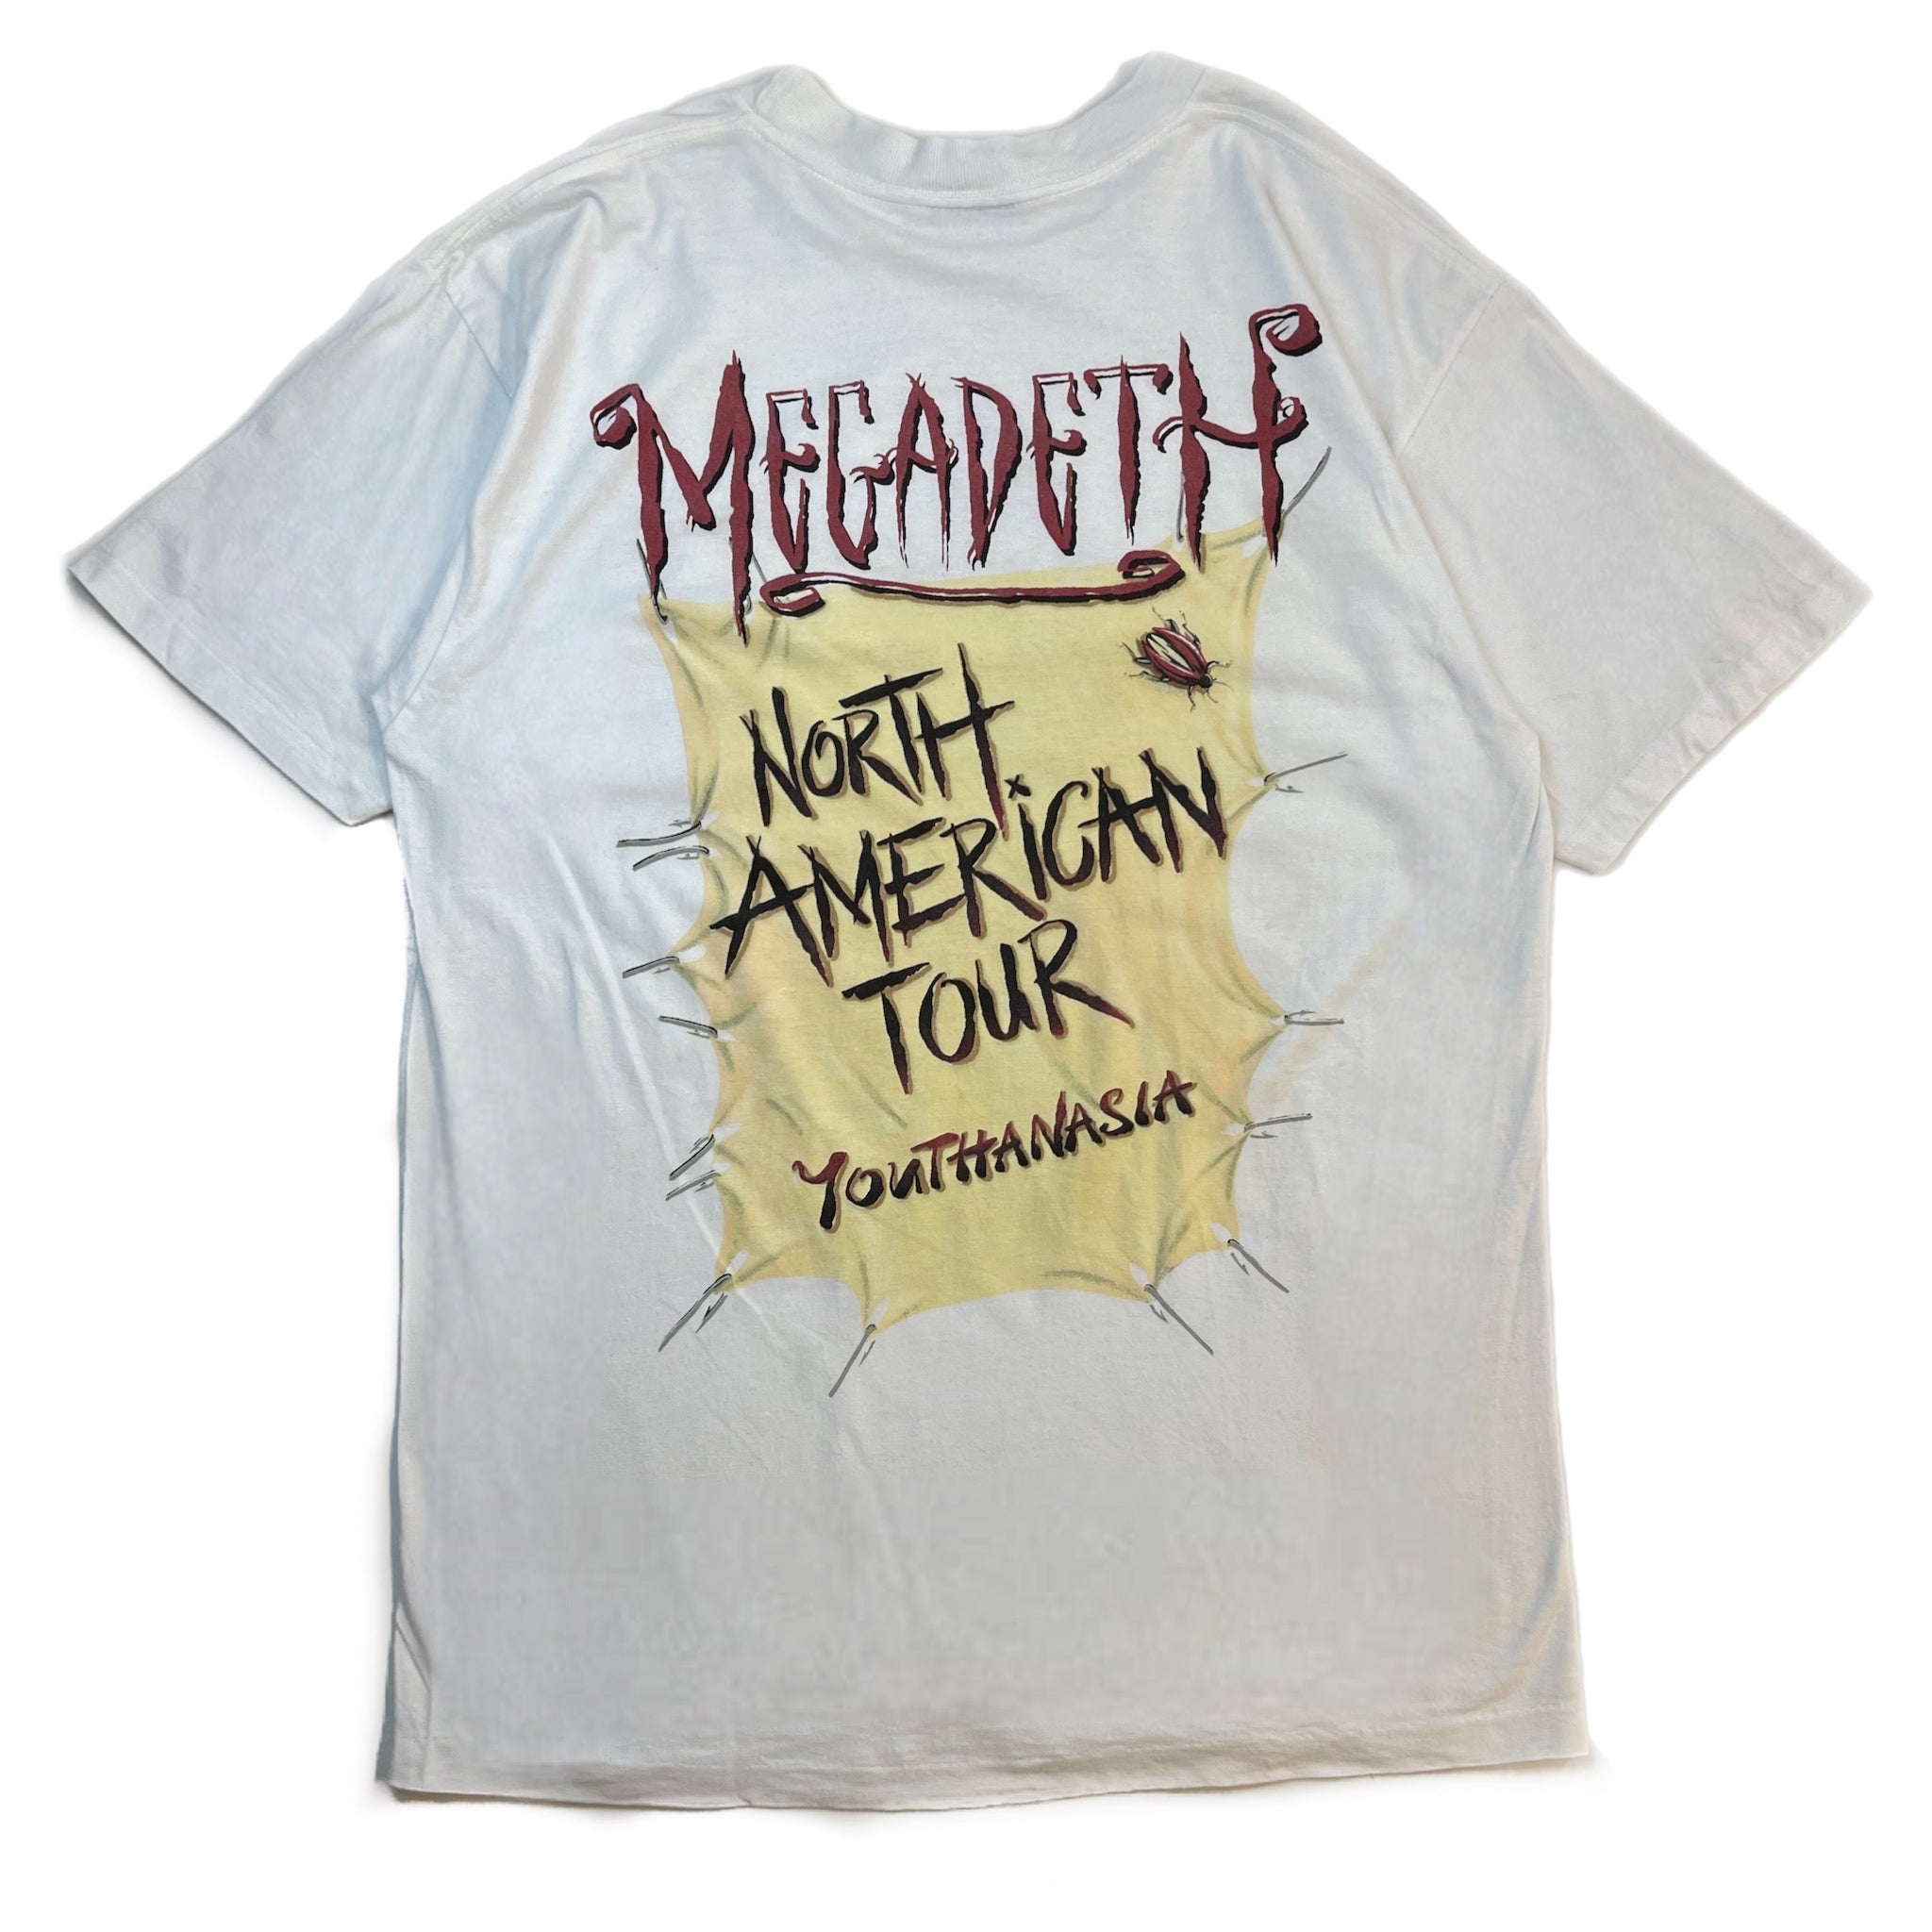 Vintage Megadeth Youthanasia Tour Tee White